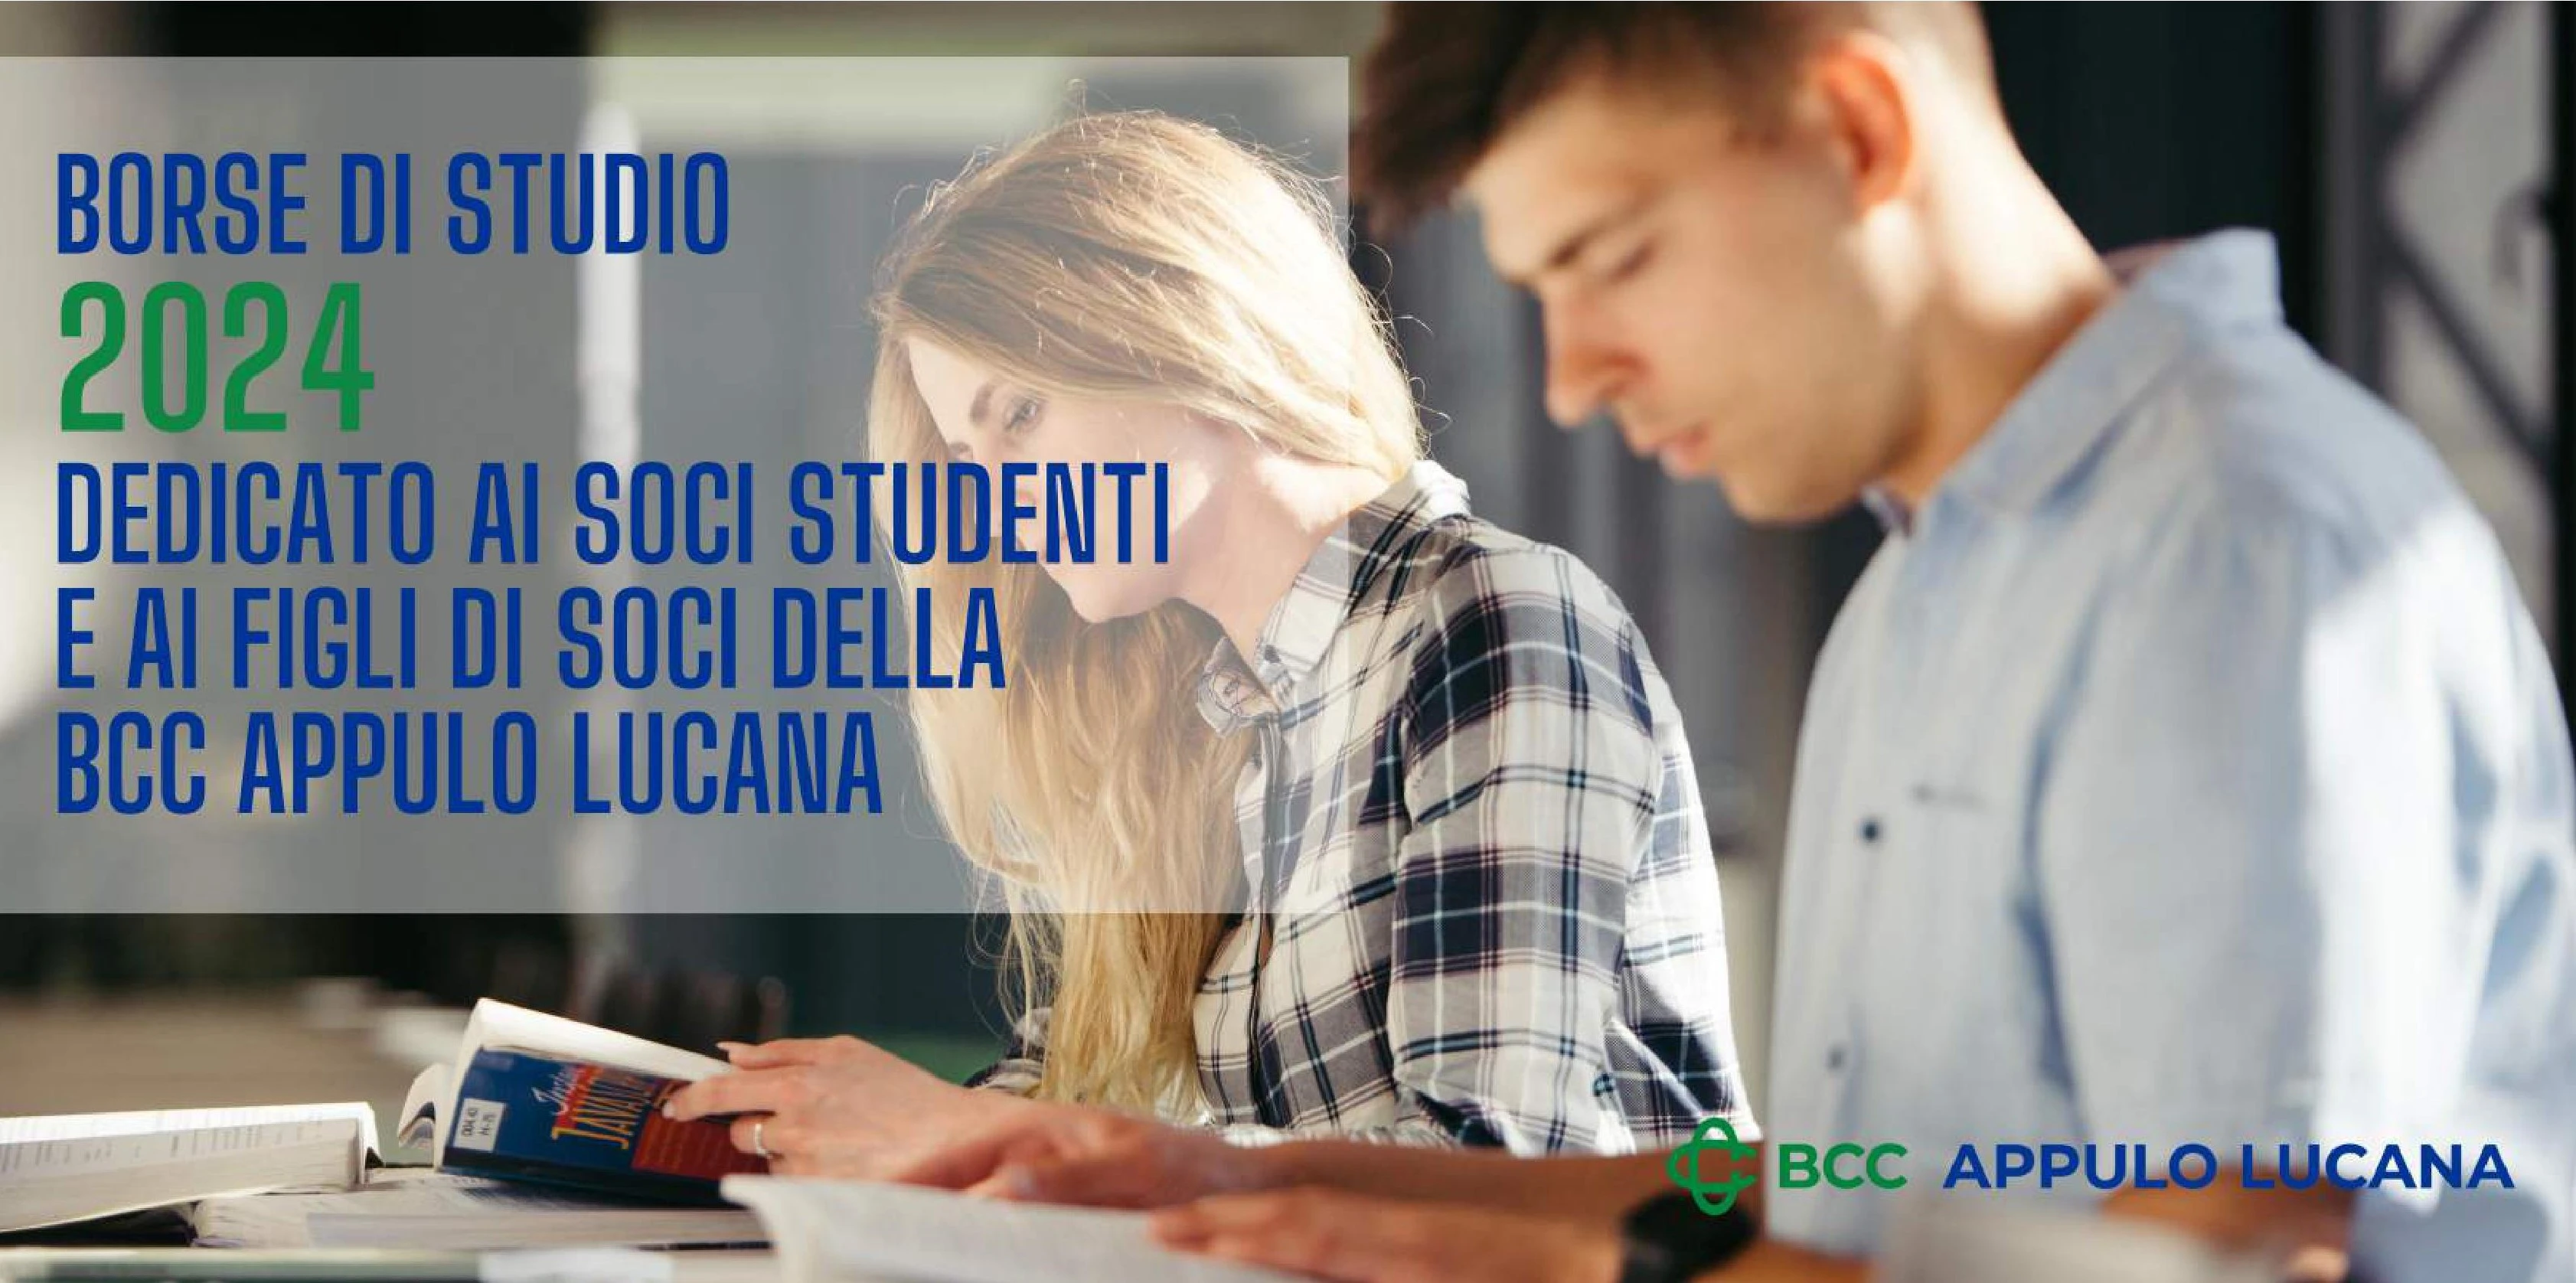 Borsa di Studio 2024 dedicata ai soci studenti e ai figli soci della BCC Appulo Lucana